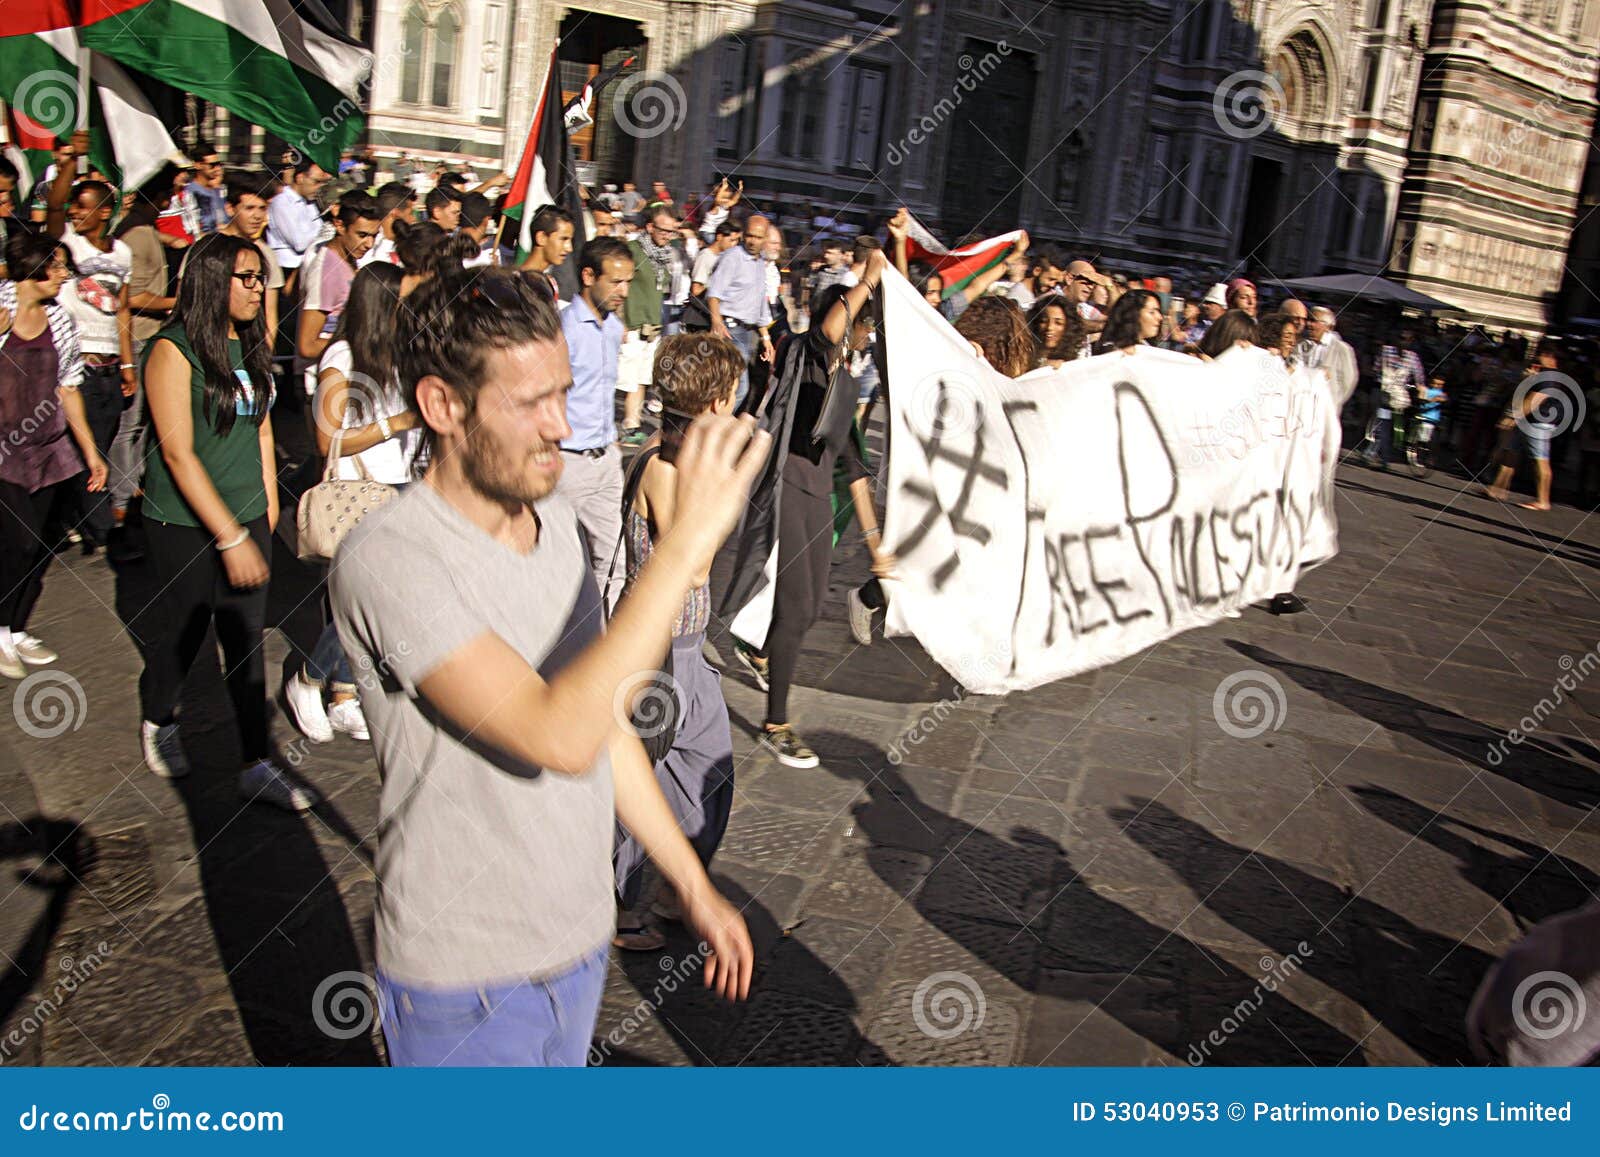 Anti-israelischer Protest, zum von Gaza-Militärschlag zu beenden. FLORENZ JUL 17: Die Anti-israelischen und pro--Palestenian Demonstranten, die Palästina-Flaggen wellenartig bewegen, drehen sich bis zum Anruf für ein Ende zu den Militärschlägen auf Gaza bei Piazza Del Duomo in Florenz, Italien am 17. Juli 2014